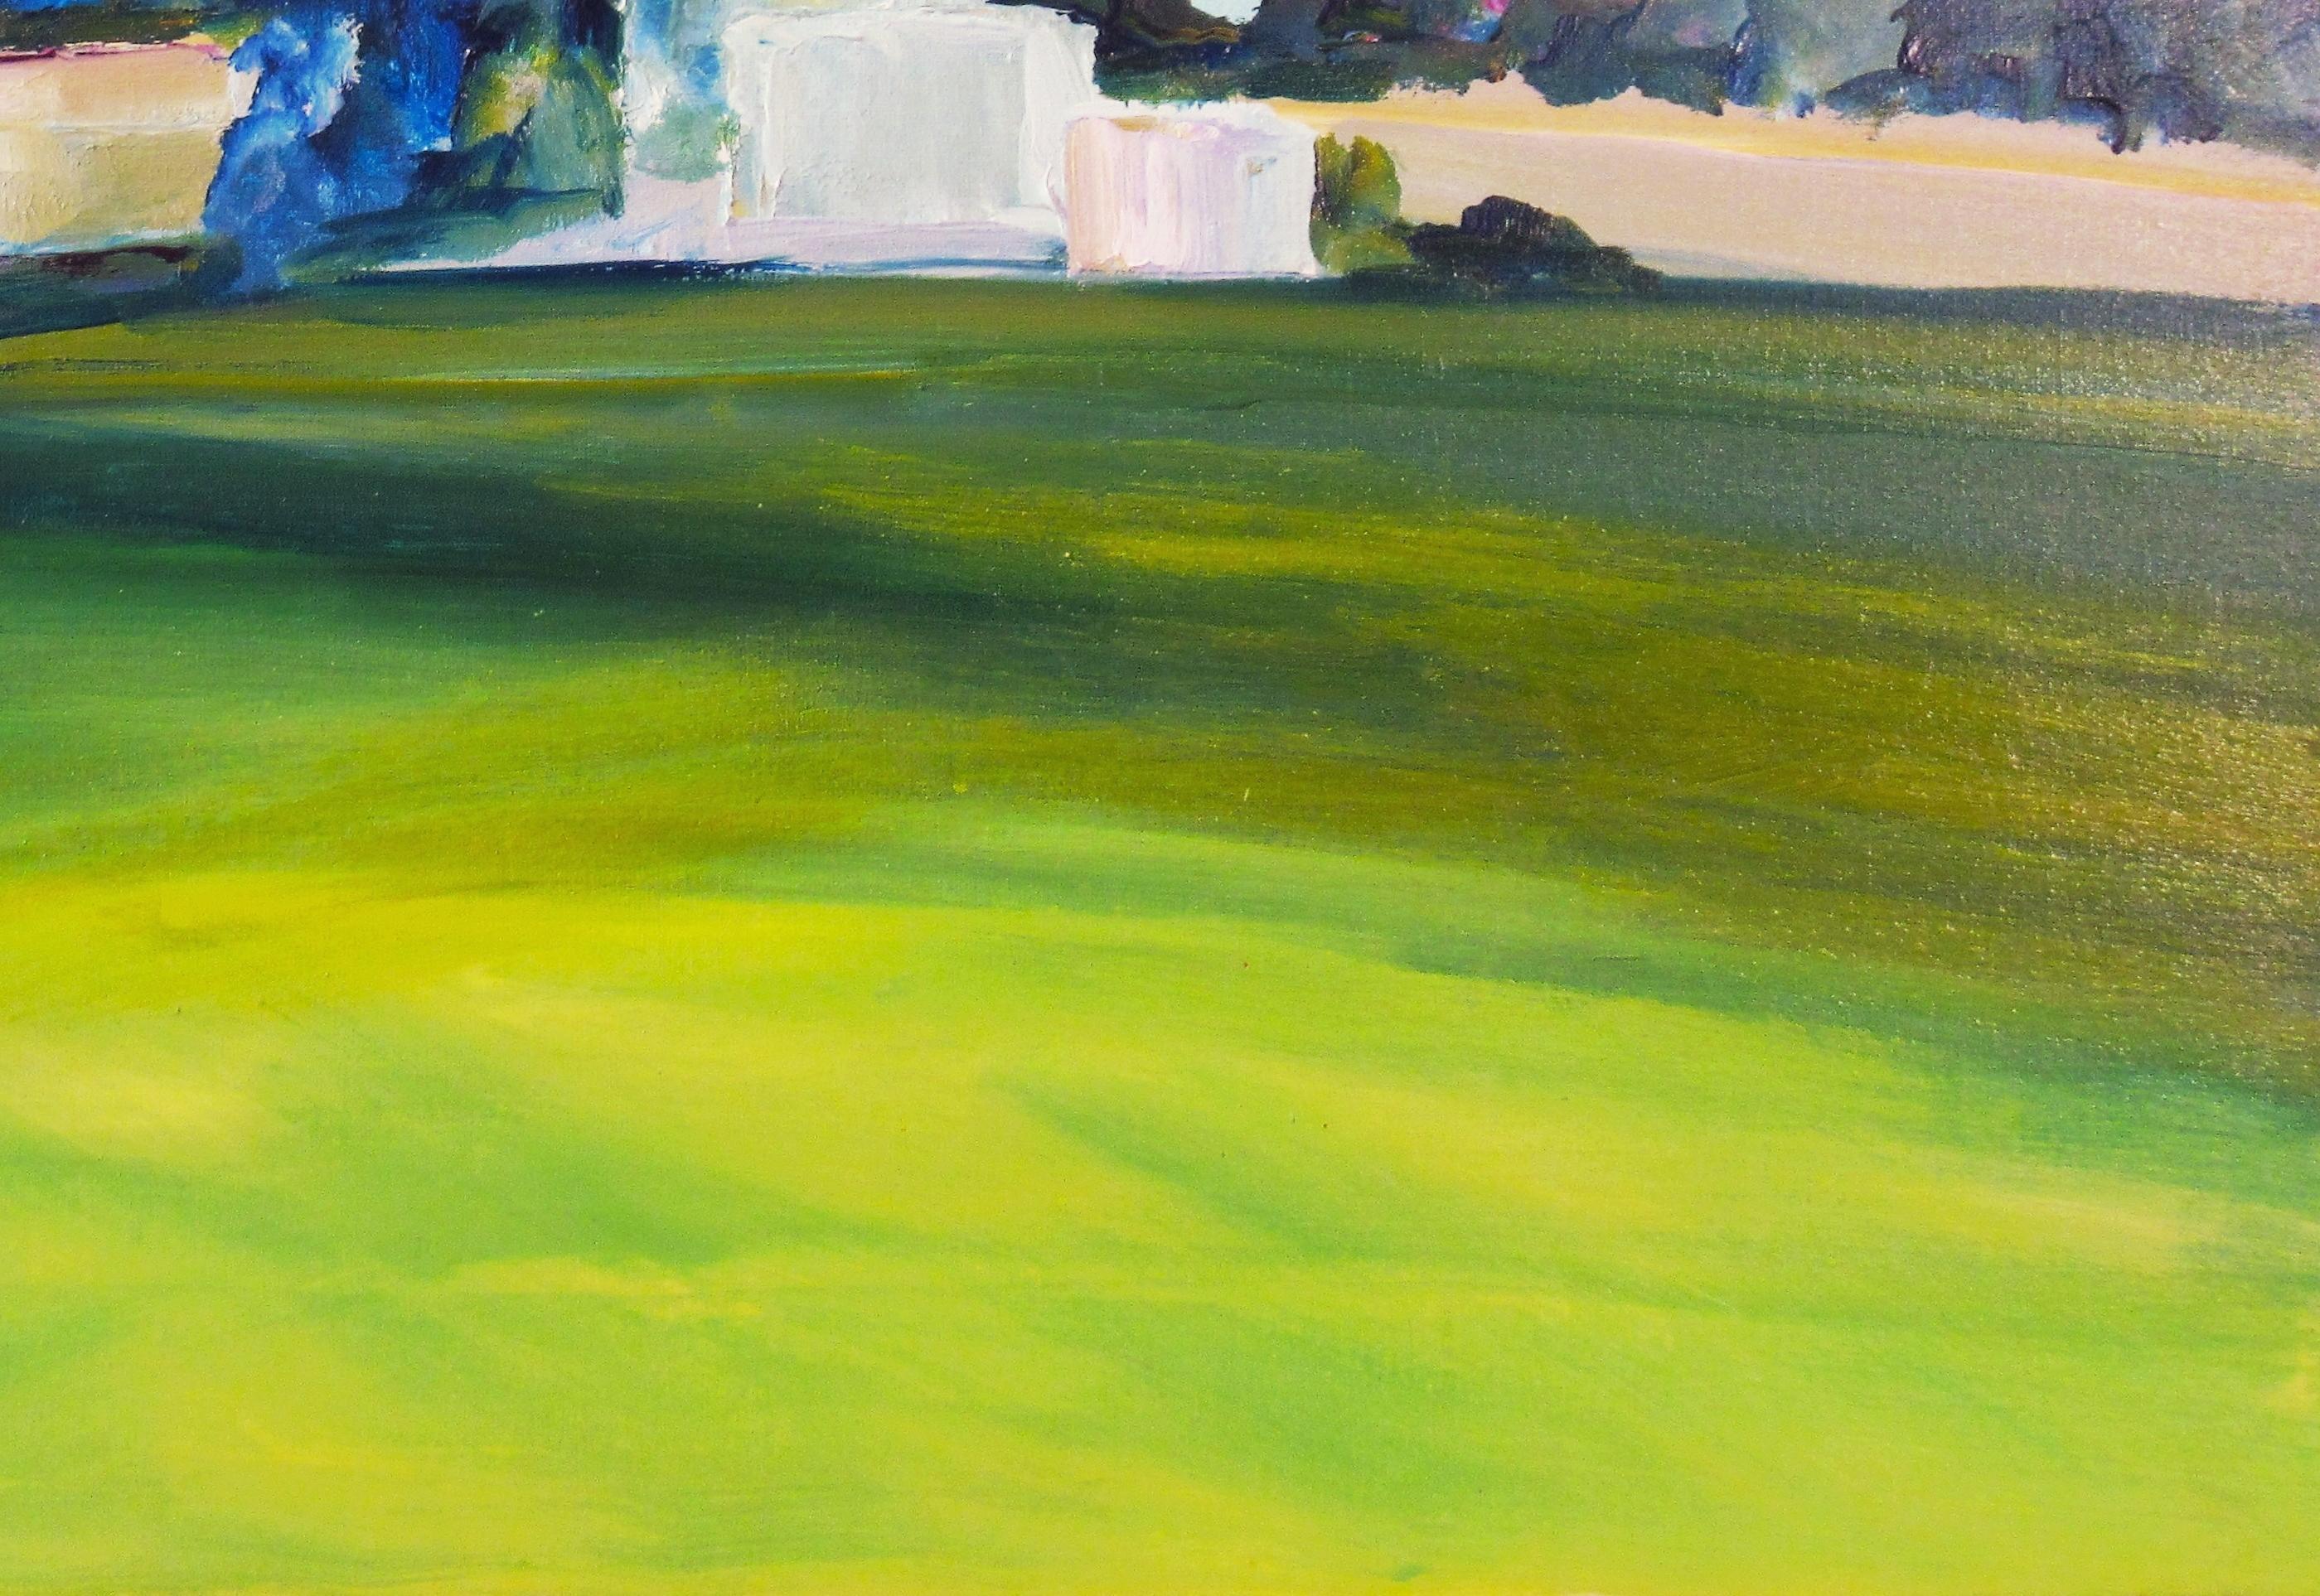 Kalifornische Landschaft (Grün), Landscape Painting, von Virginia (Ginger) Shaver